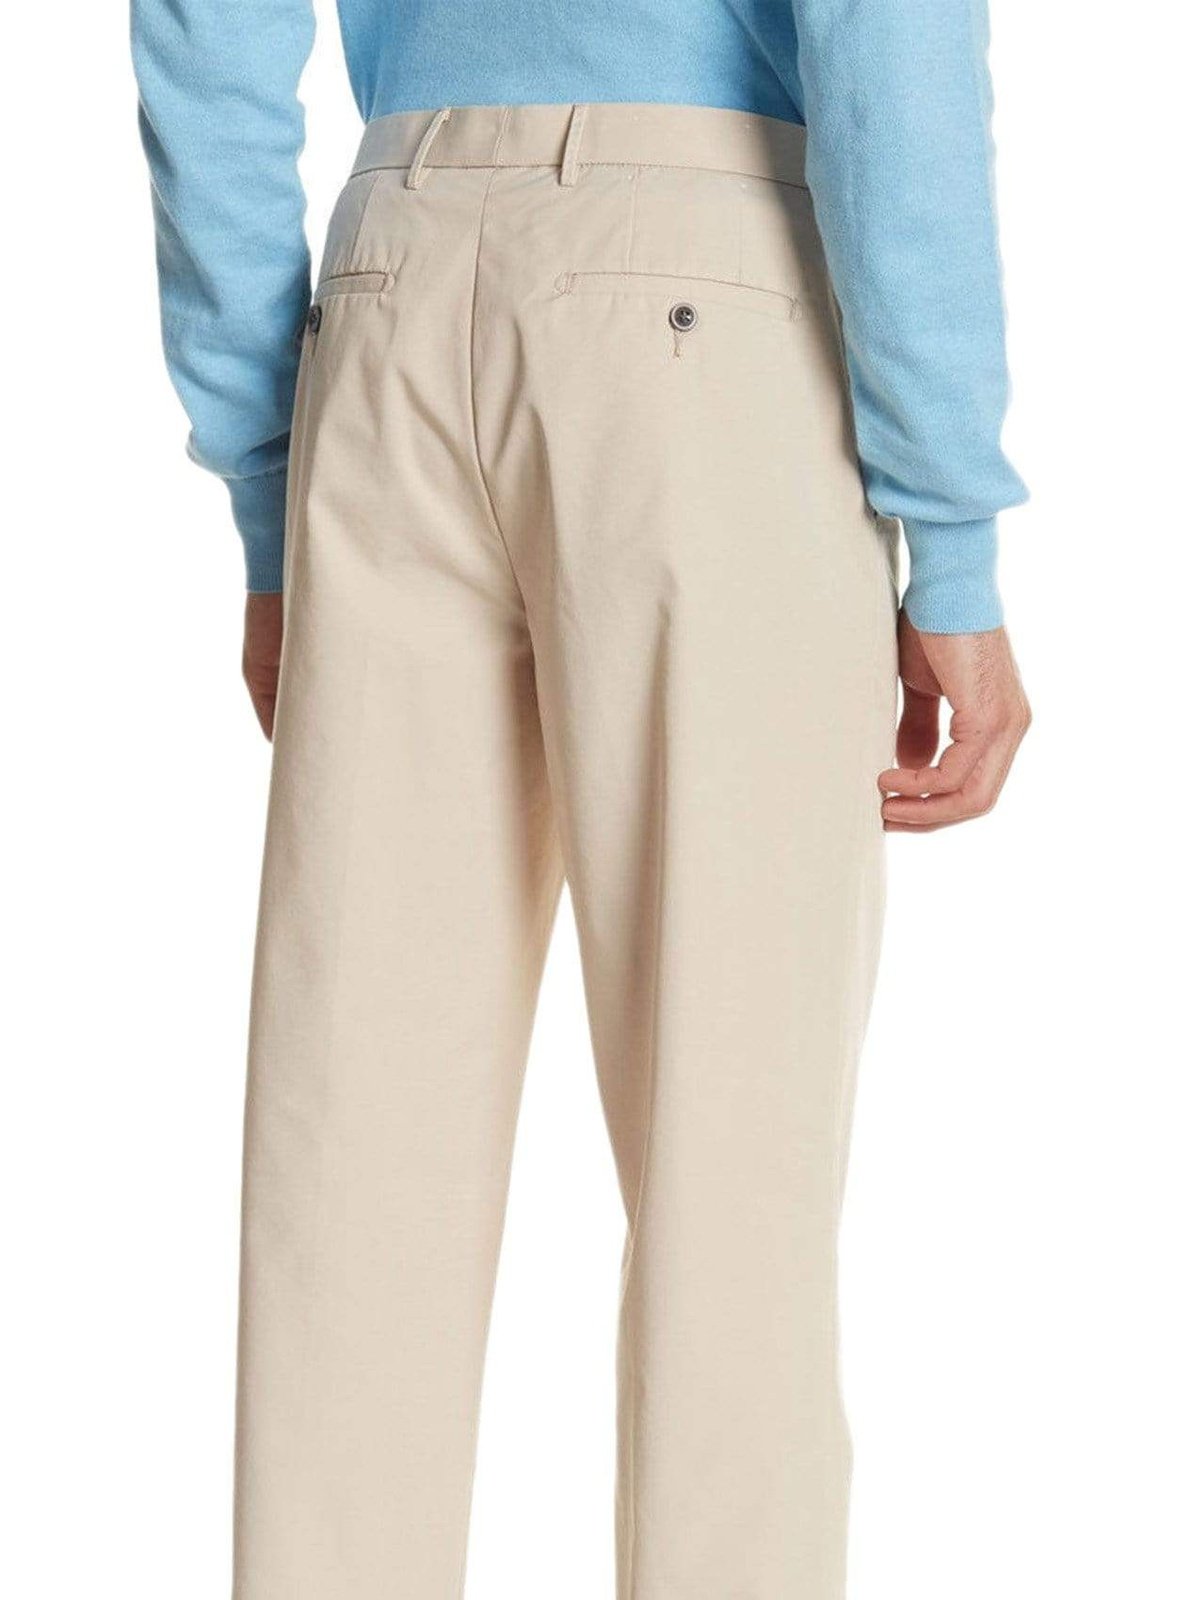 Ralph Lauren PANTS Lauren Ralp Lauren Regular Fit Solid Tan Flat Front Cotton Dress Pants